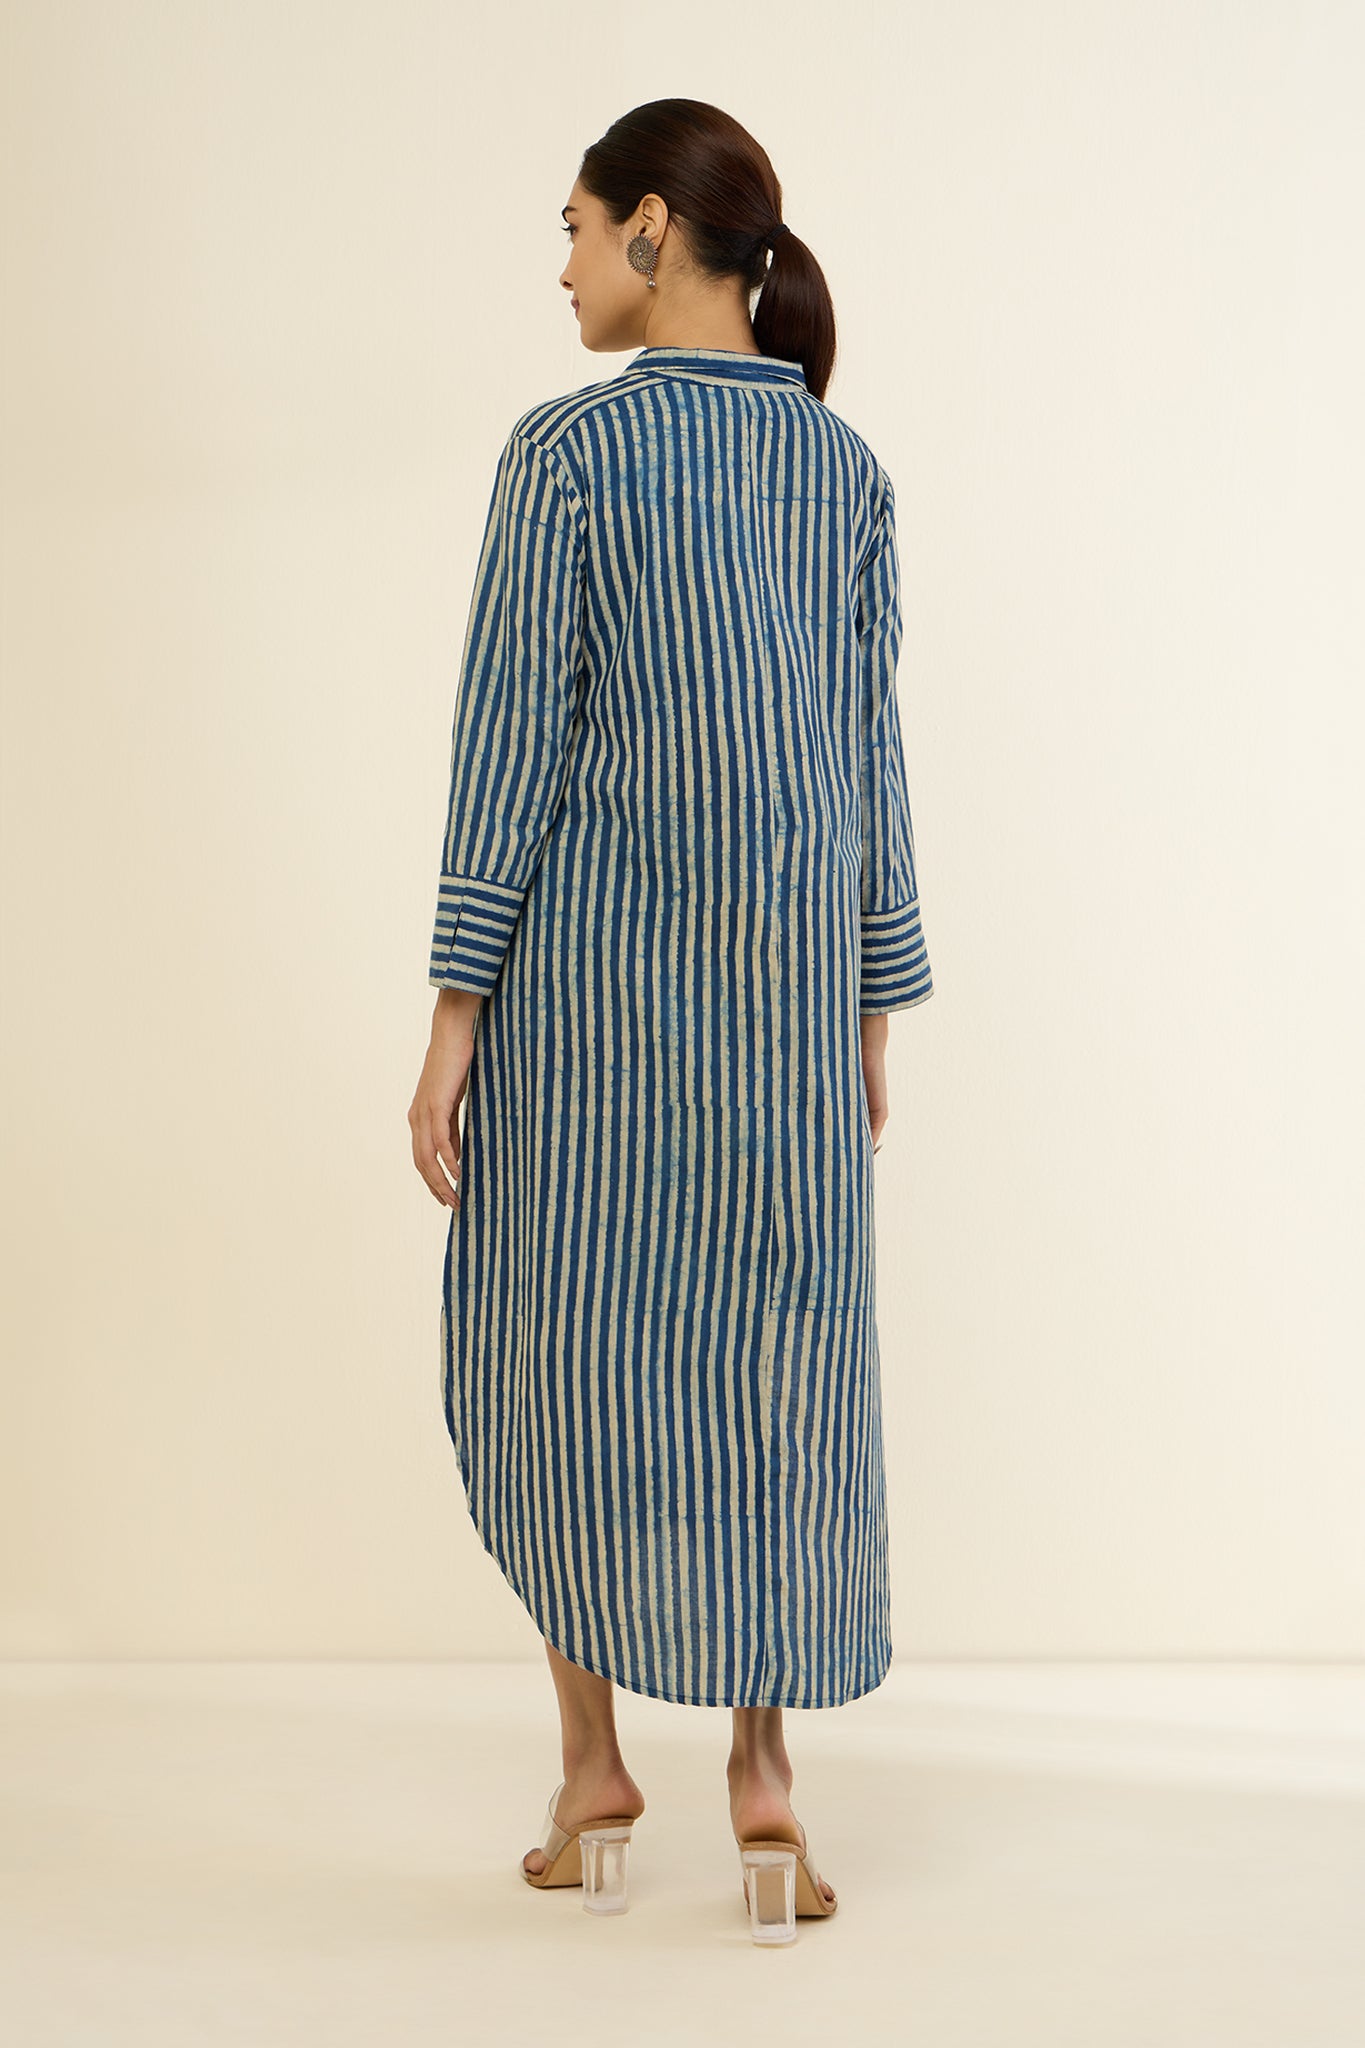 Ajrkah indigo white stripes button down Long shirt dress 